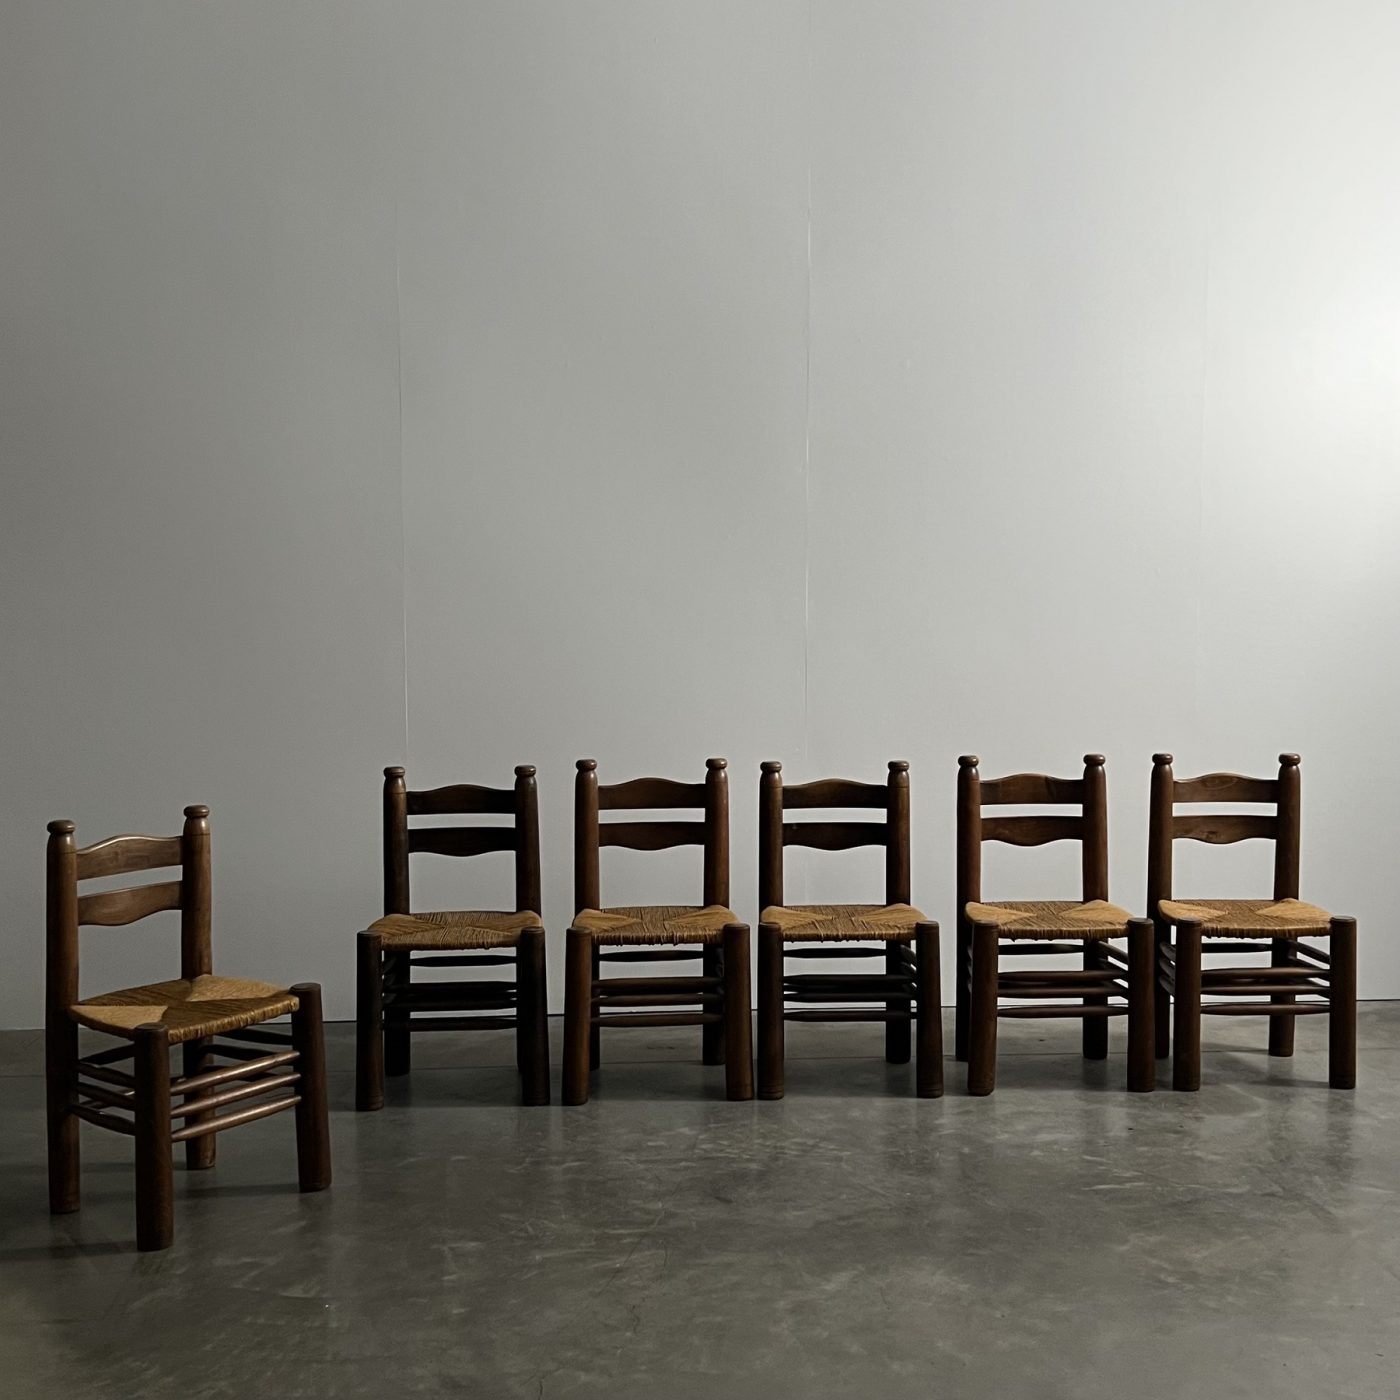 objet-vagabond-dudouyt-chairs0007